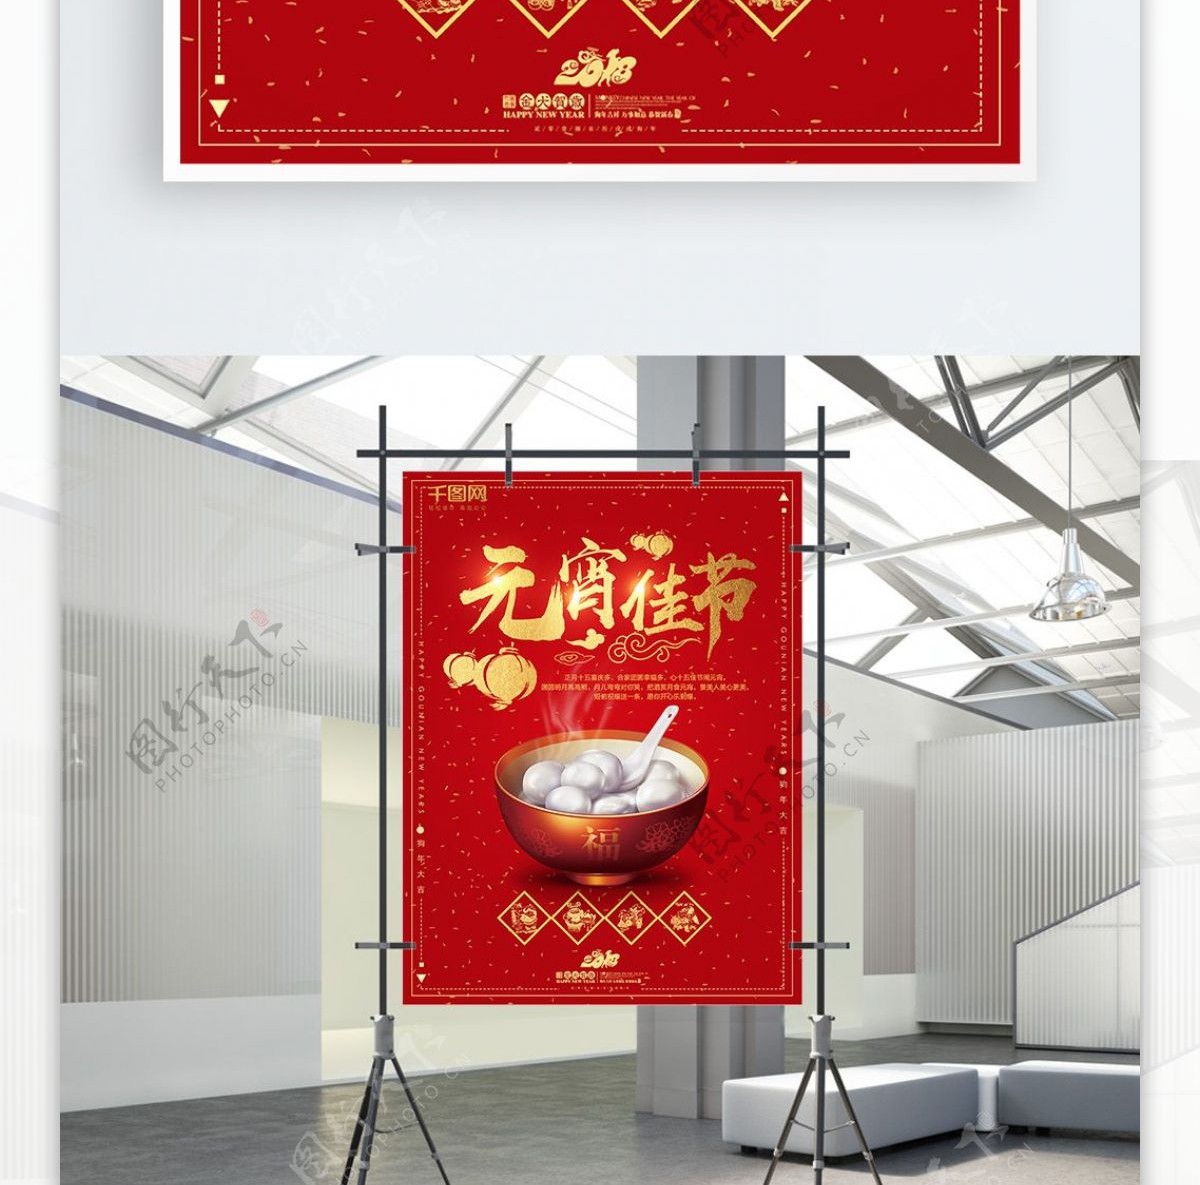 2018新春红色元宵佳节海报设计